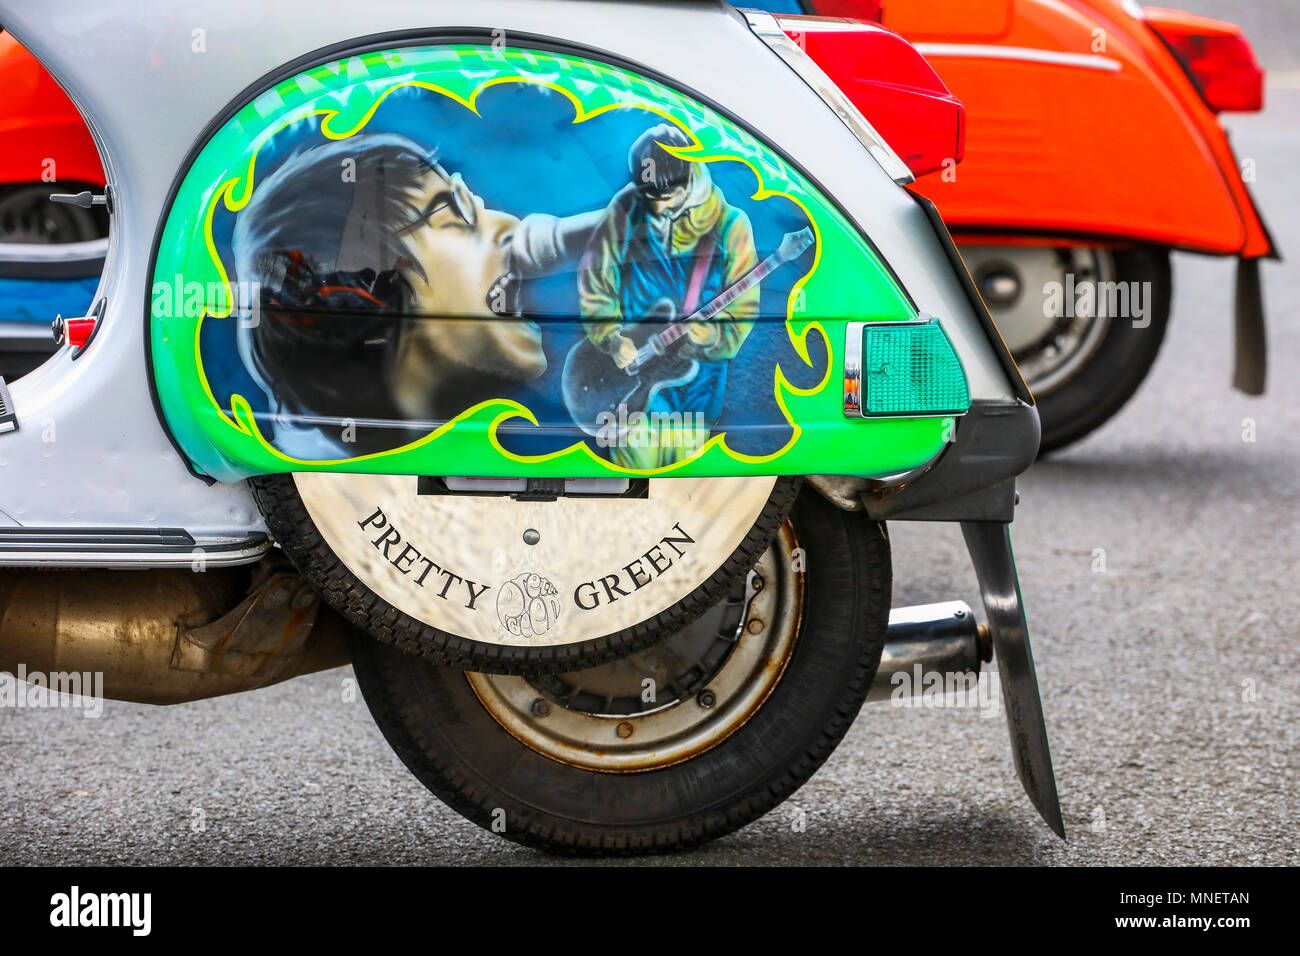 Gib China Rollern keine Chance Bike Motorrad Moped Kleber Aufkleber Sticker  Fun